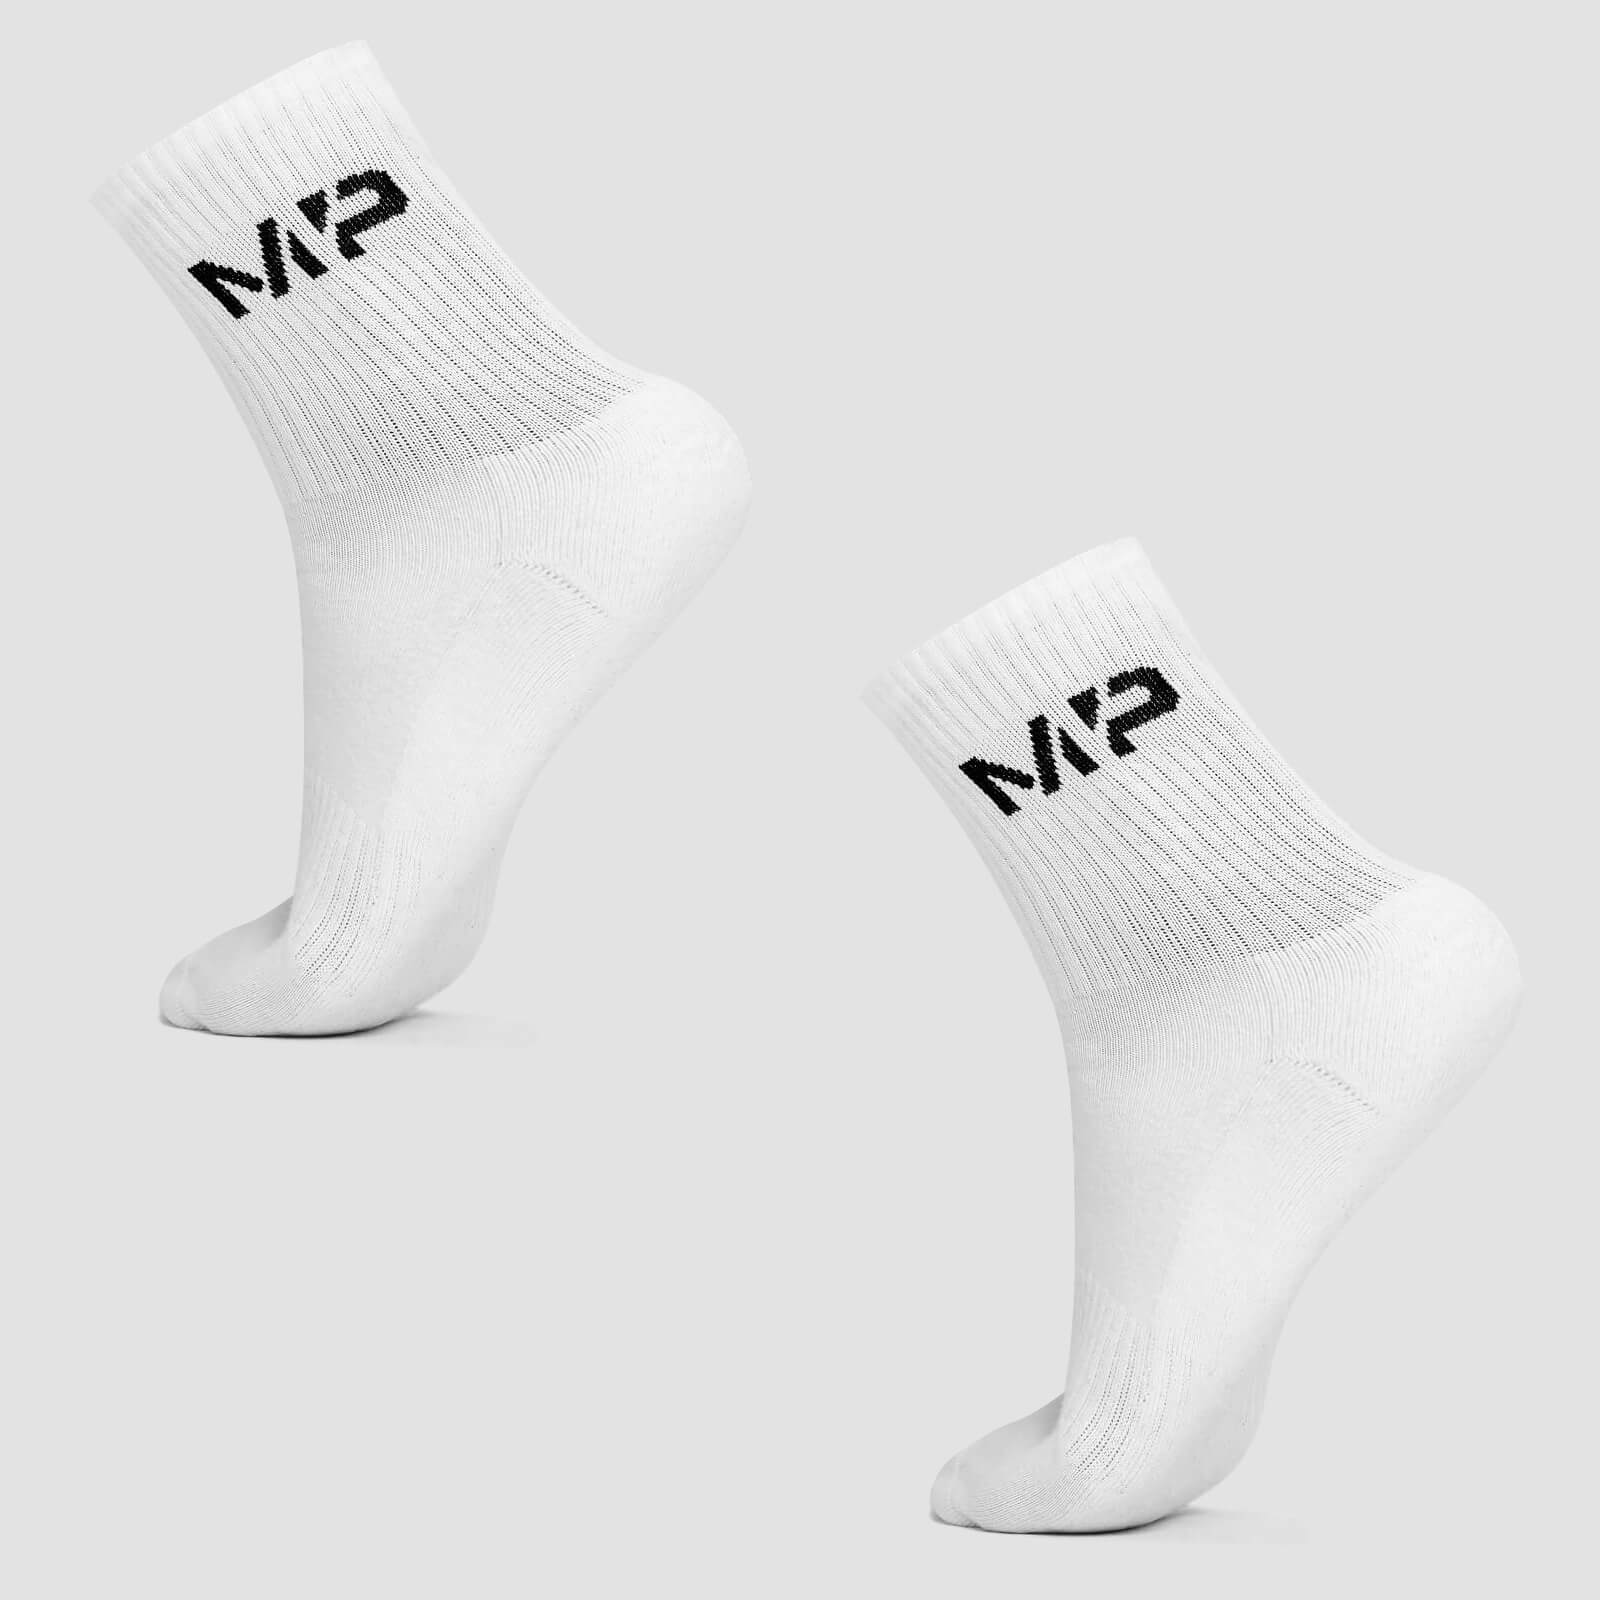 MP Men's Crew Socks - White (2 Pack) - UK 6-8